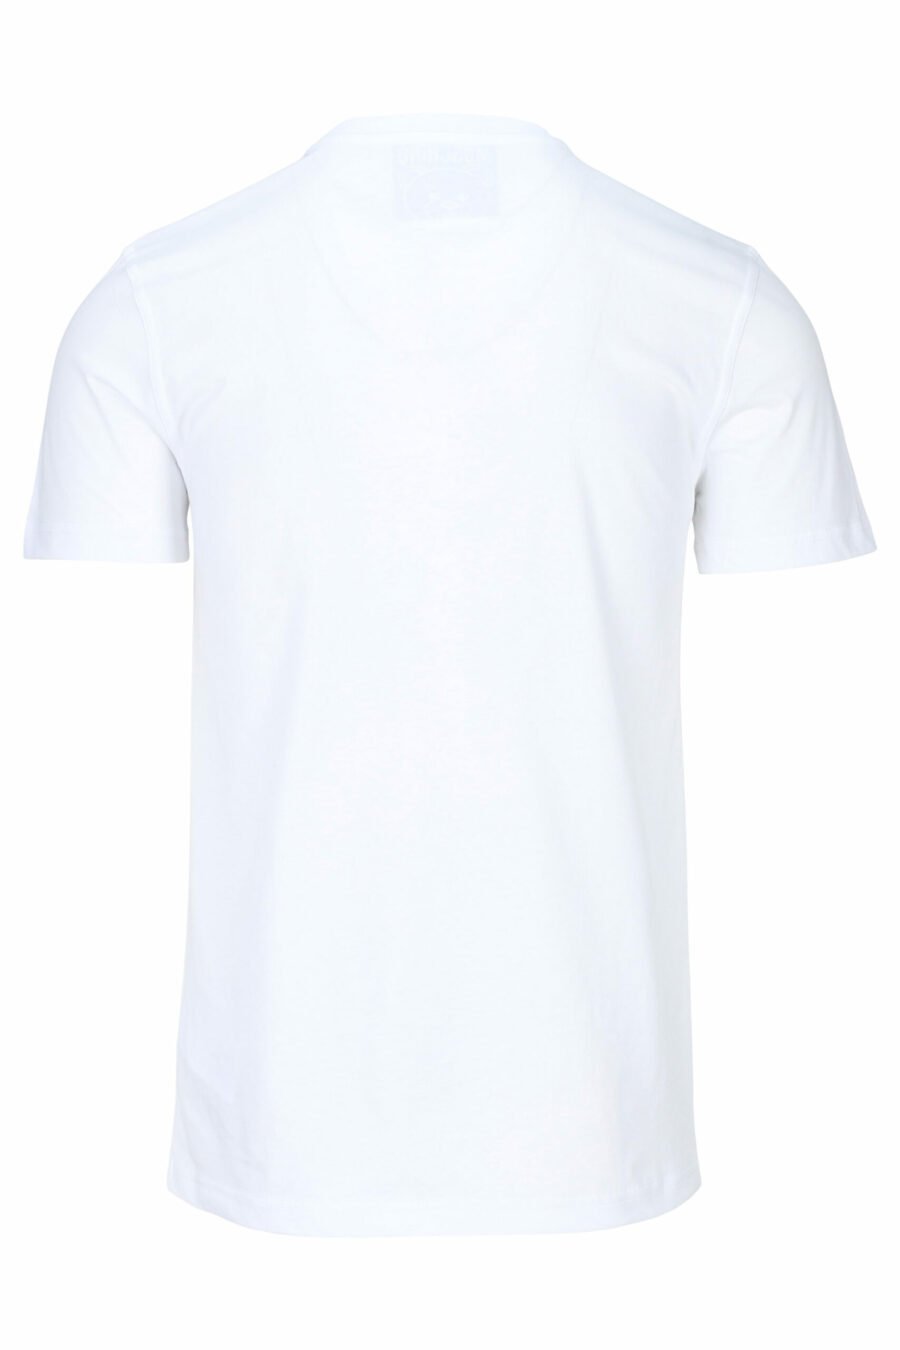 T-shirt branca com maxilogo "teddy" feito à medida - 667113108100 1 à escala